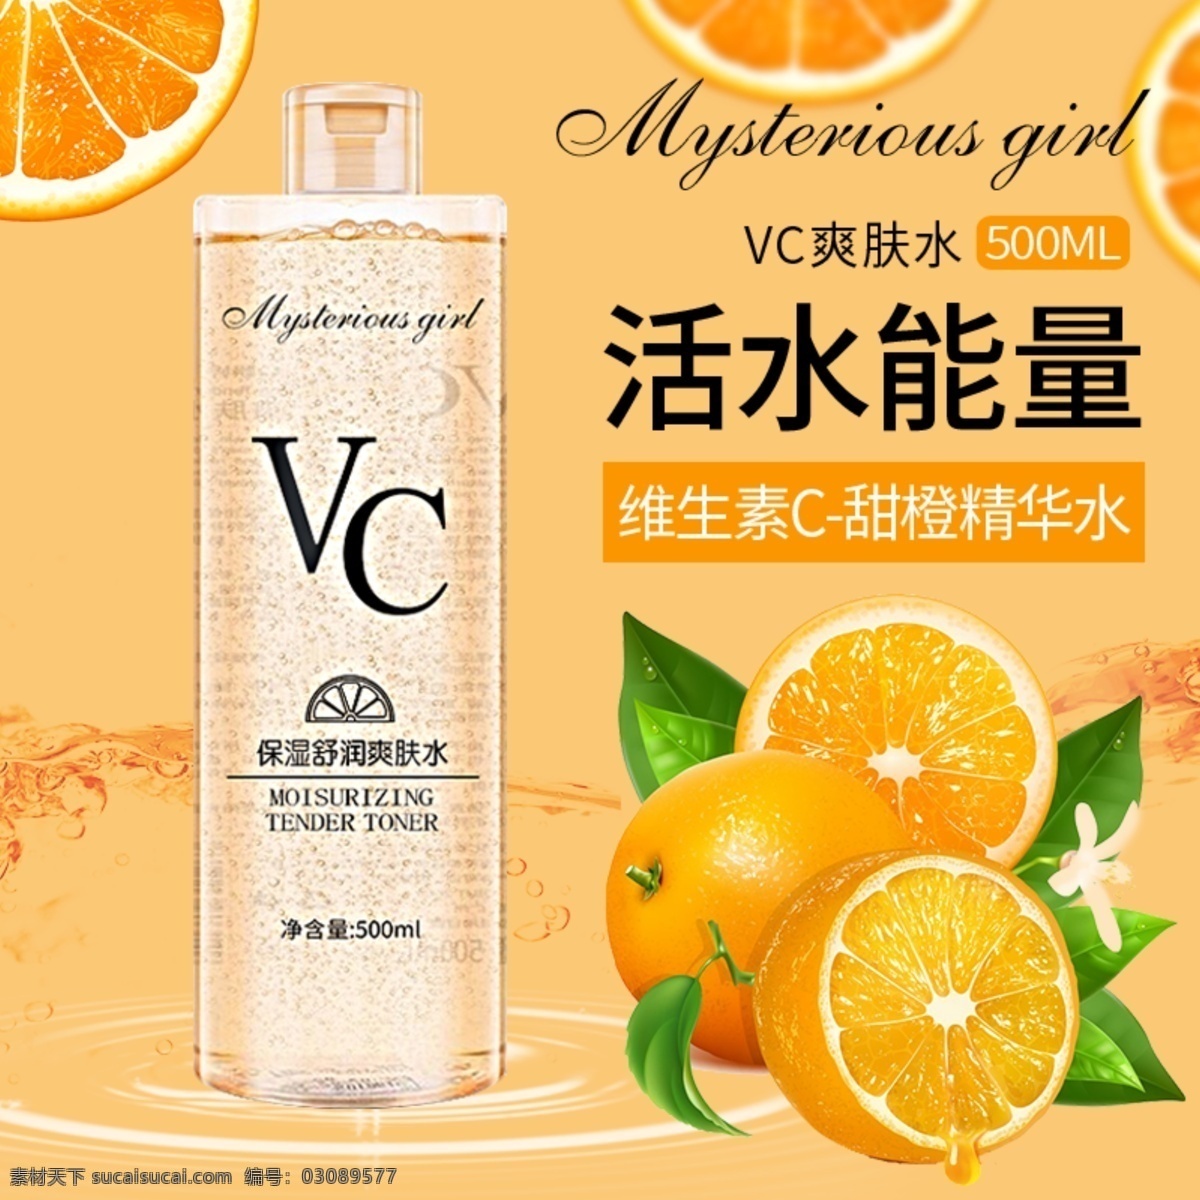 保湿 补水 精华 化妆水 橙子 柠檬 橘黄色 卸妆水 维生素c